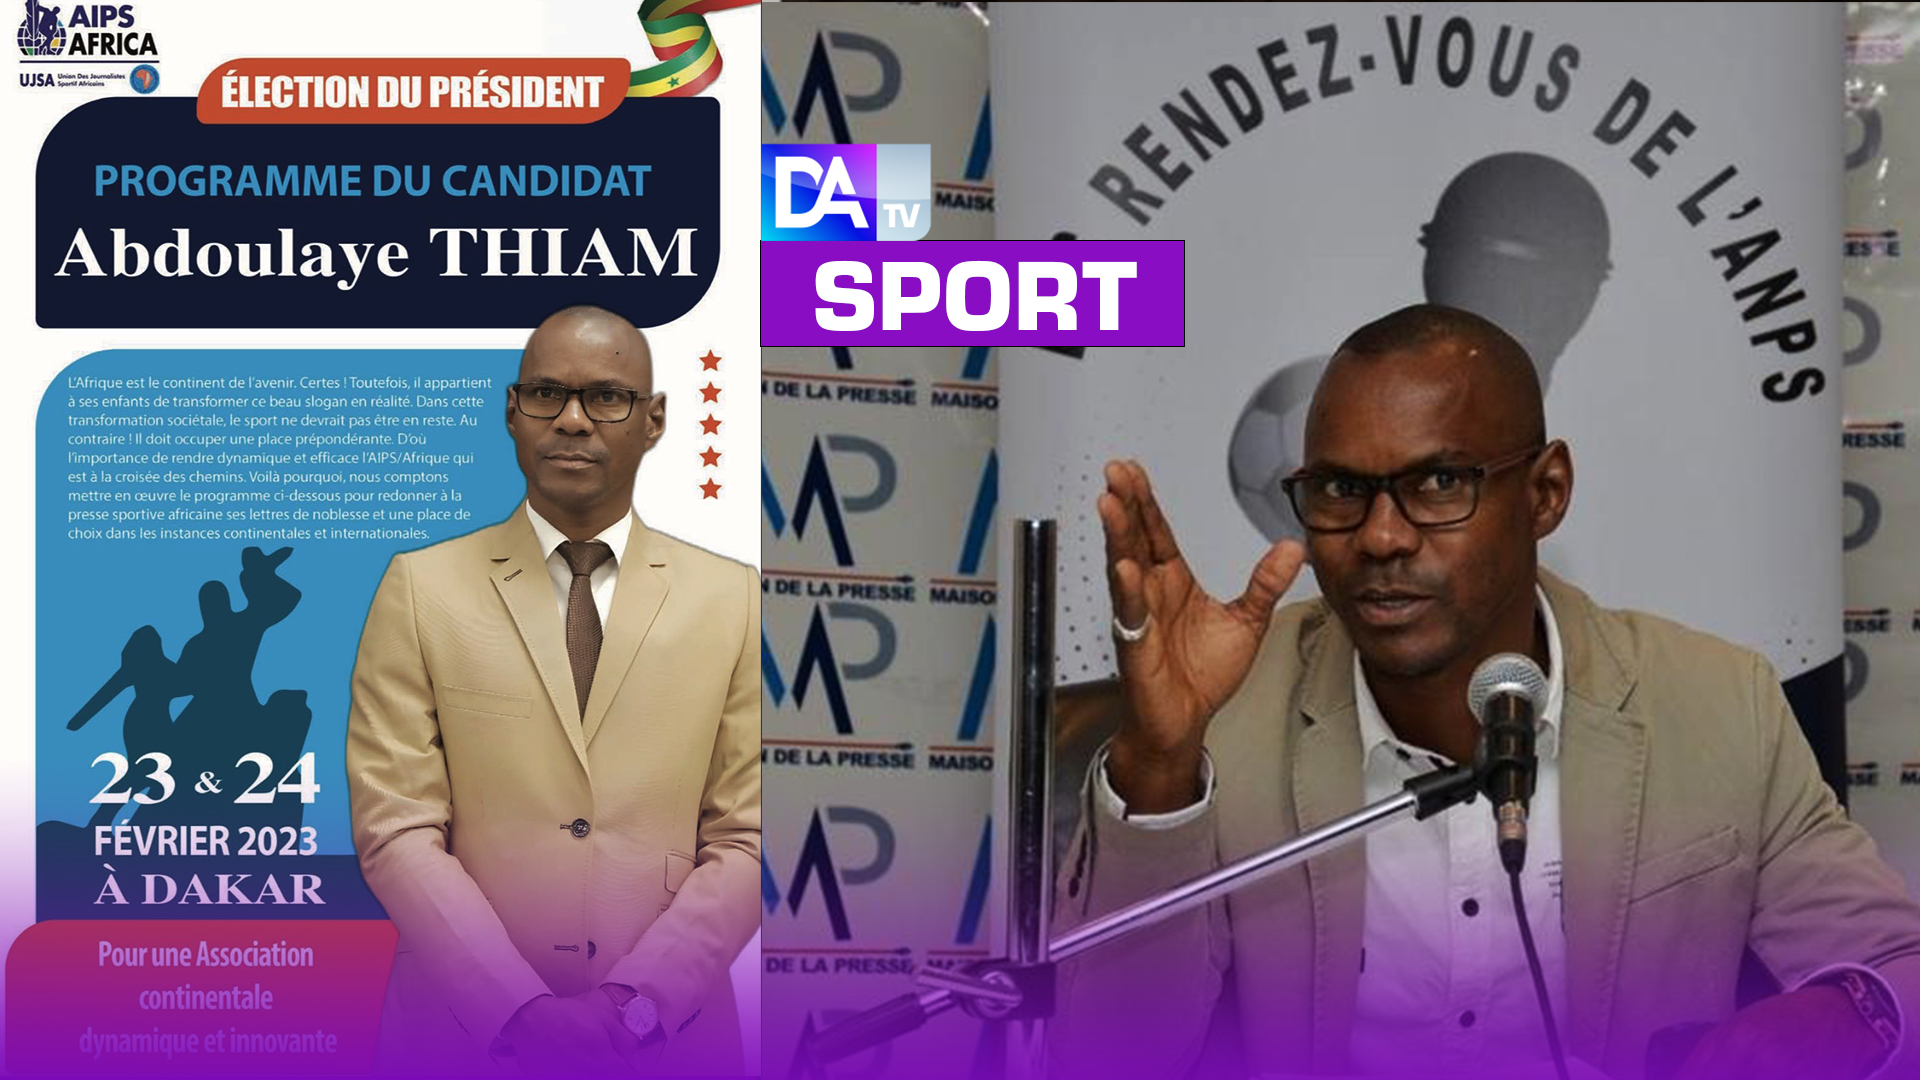 7ème Congrès AIPS-Afrique : Le candidat Abdoulaye Thiam dévoile son programme…